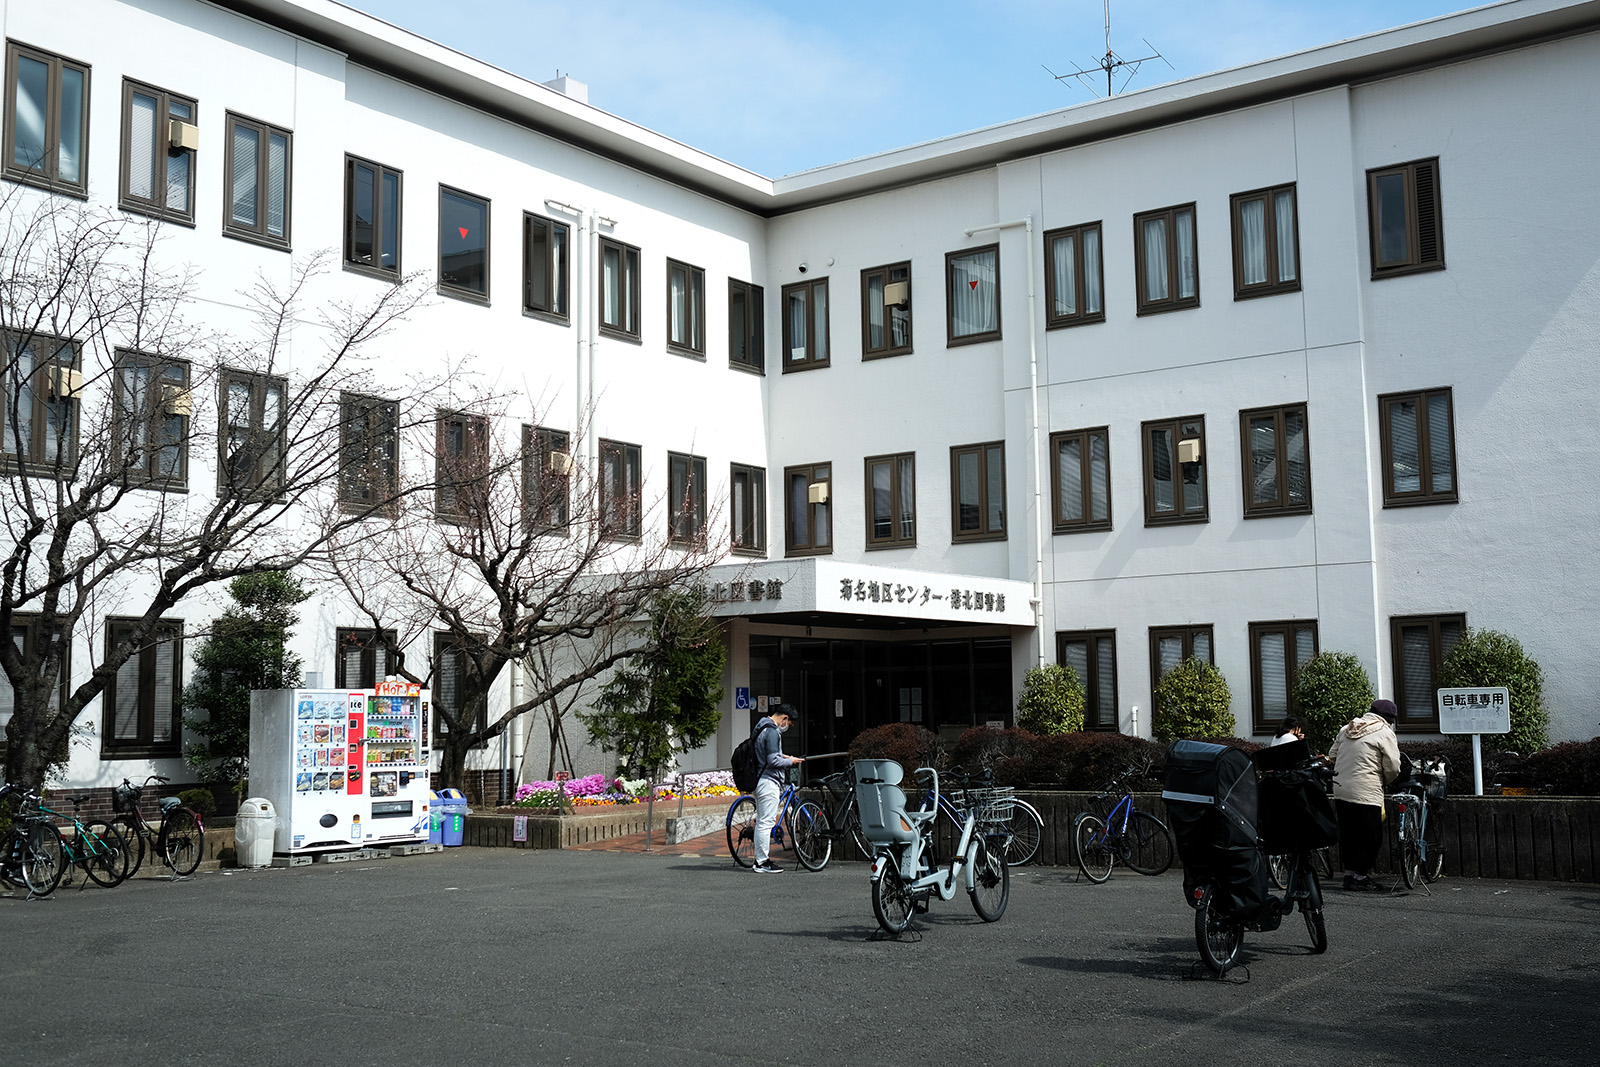 菊名地区センターは東横線の菊名駅から5分ほどの場所にあります。